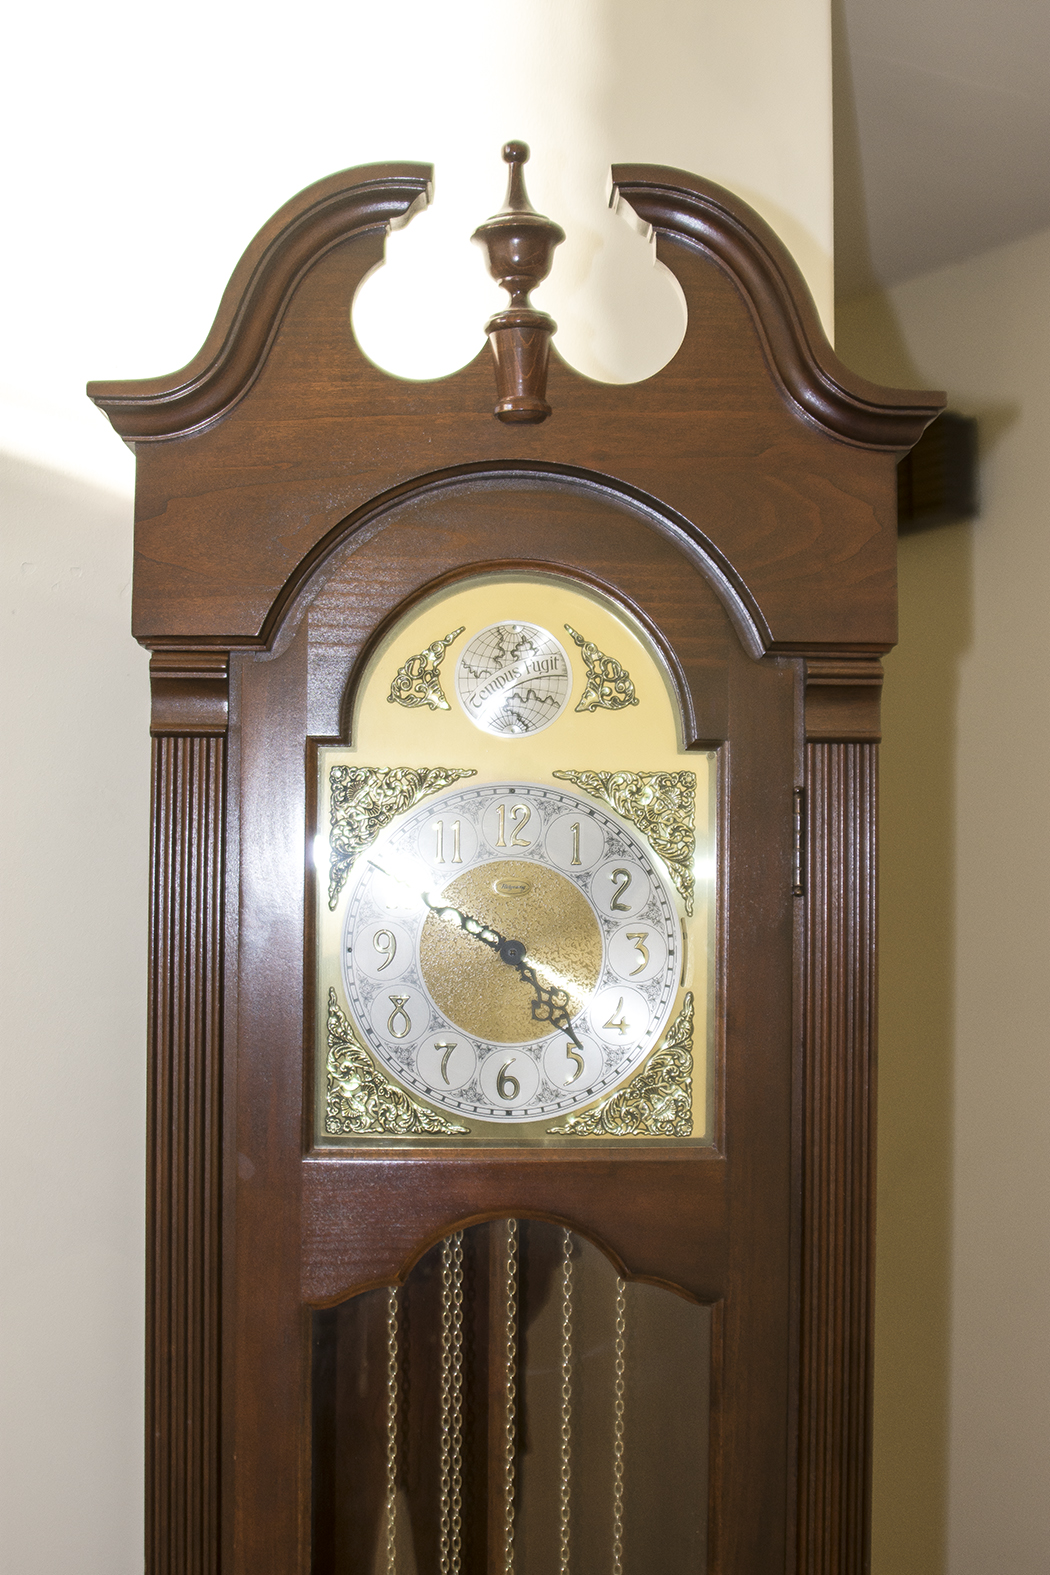 ridgeway grandfather clock serial number 1294